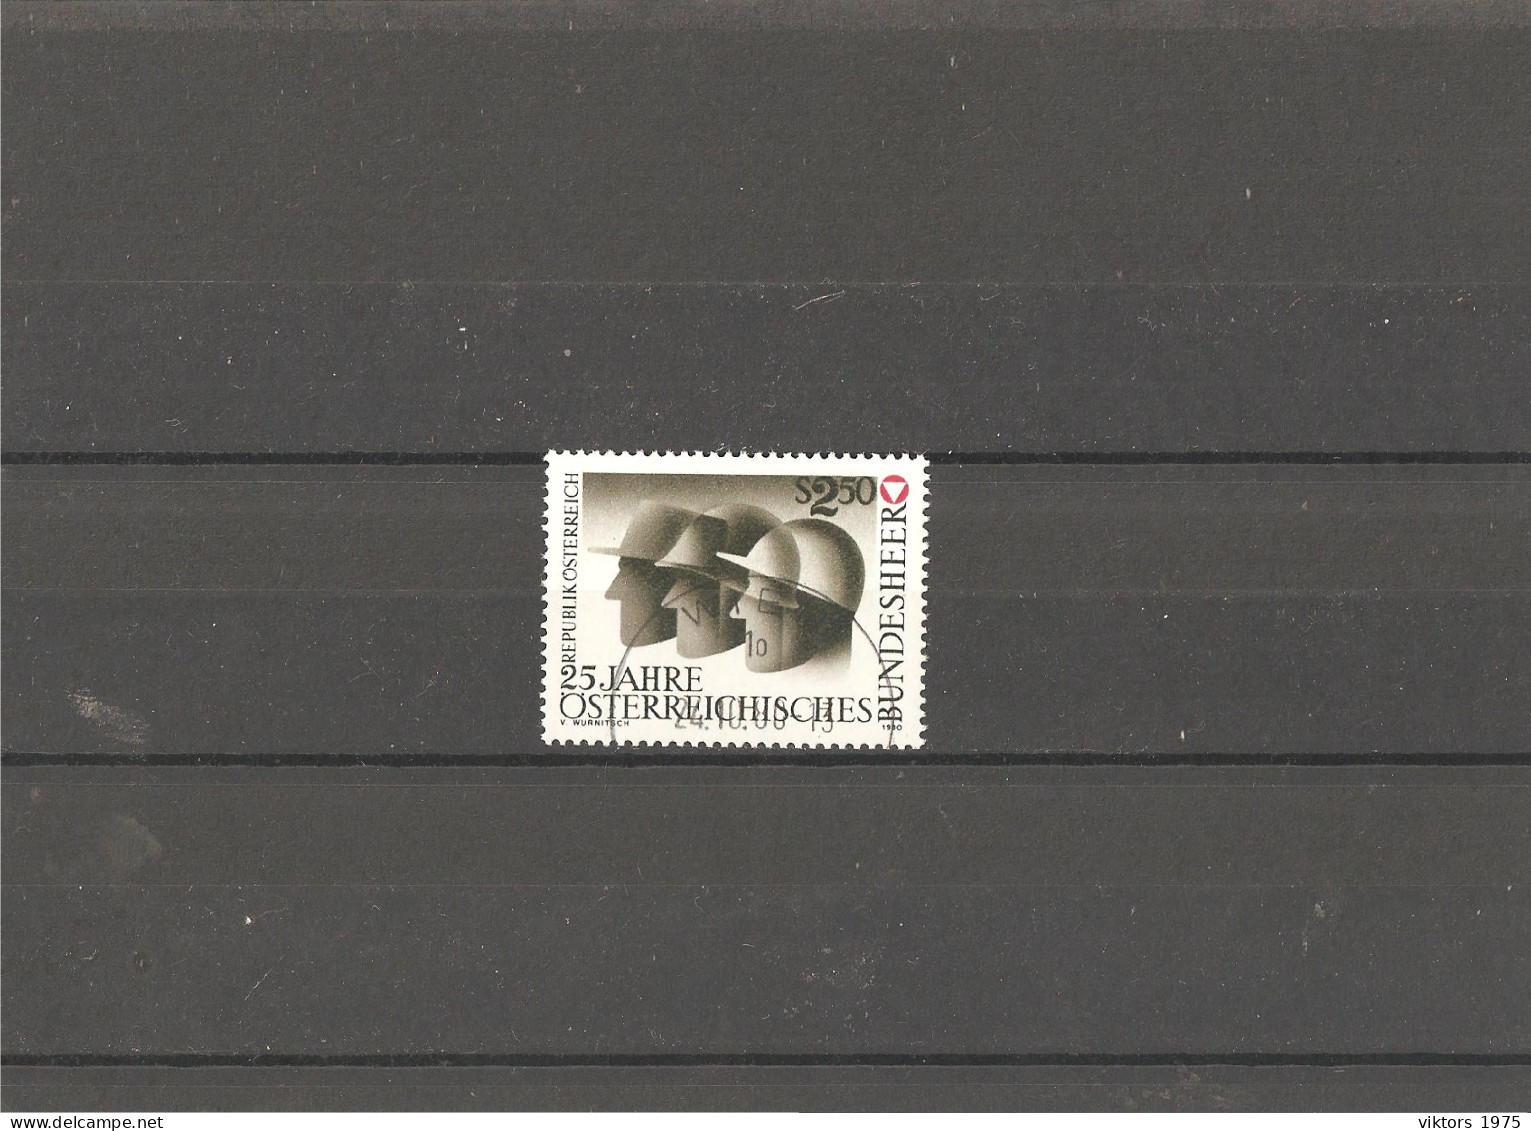 Used Stamp Nr.1659 In MICHEL Catalog - Usati